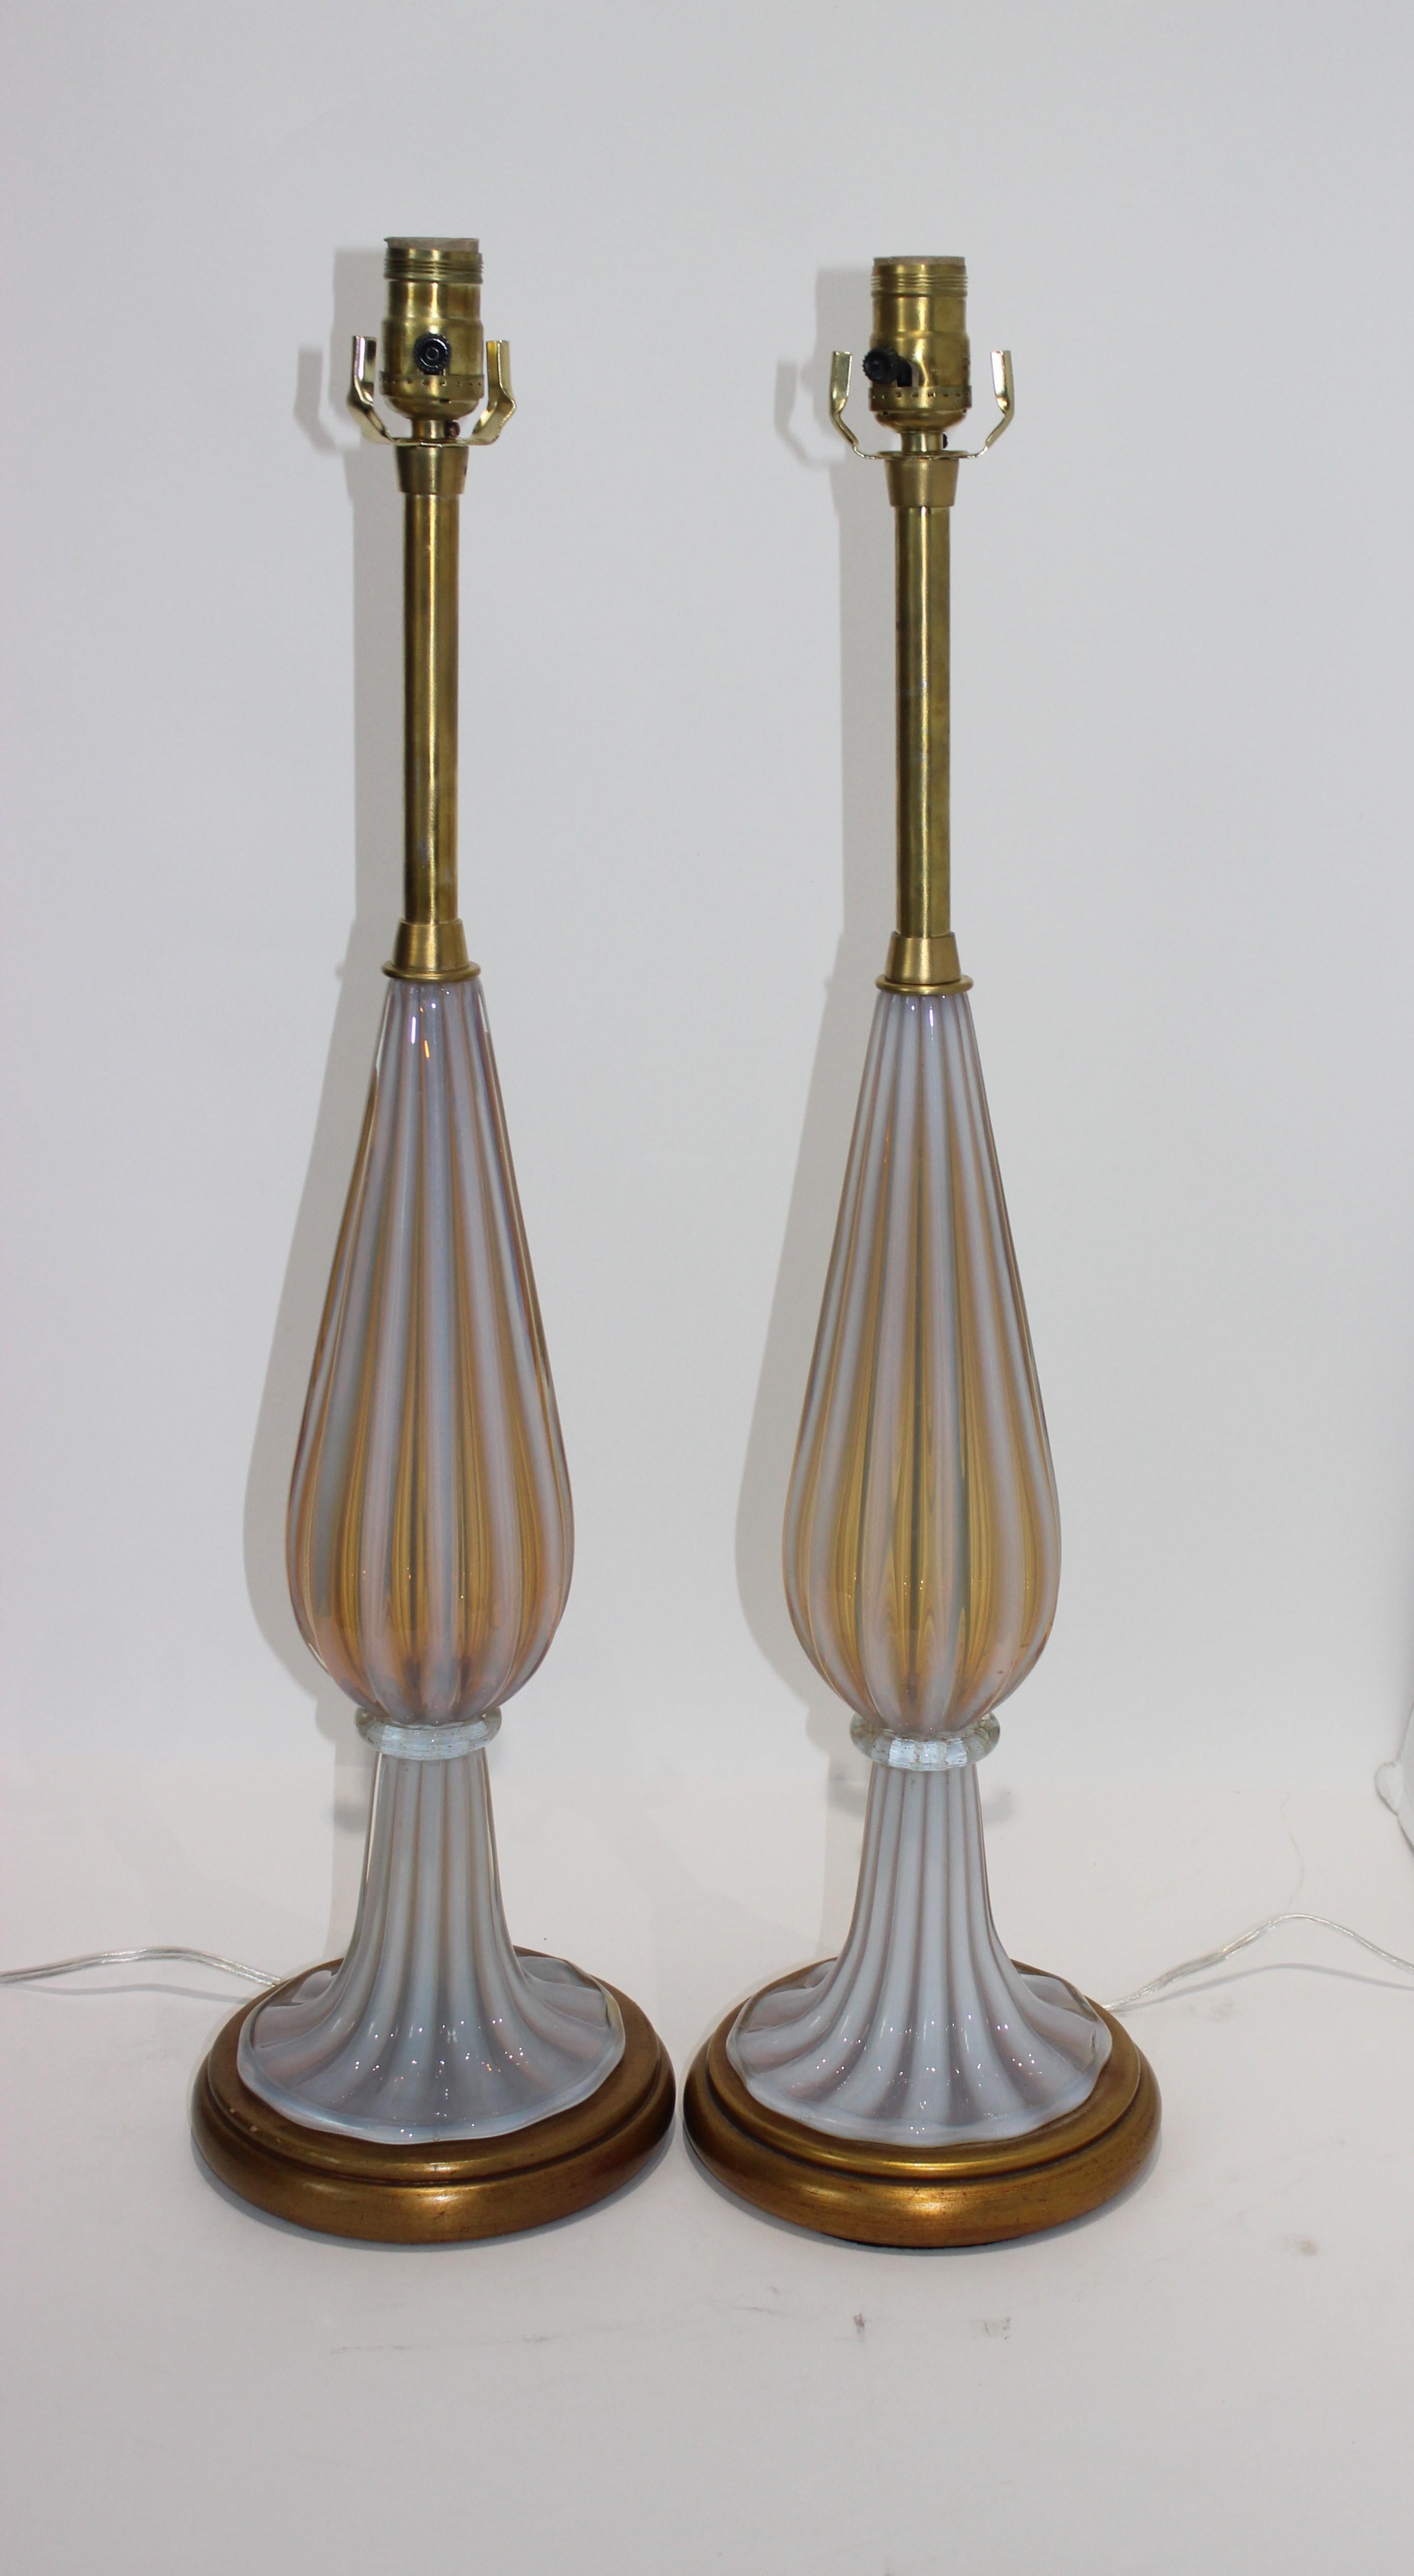 Dieses stilvolle Paar Marbro-Tischlampen wurde von Seguso (Muranoglas) für die Marbro Lamp Company entworfen und stammt aus den 1960er Jahren.  Das Paar wurde neu verkabelt und hat neue Steckdosen.  

Anmerkung:  Die Höhe bis zur Oberkante des